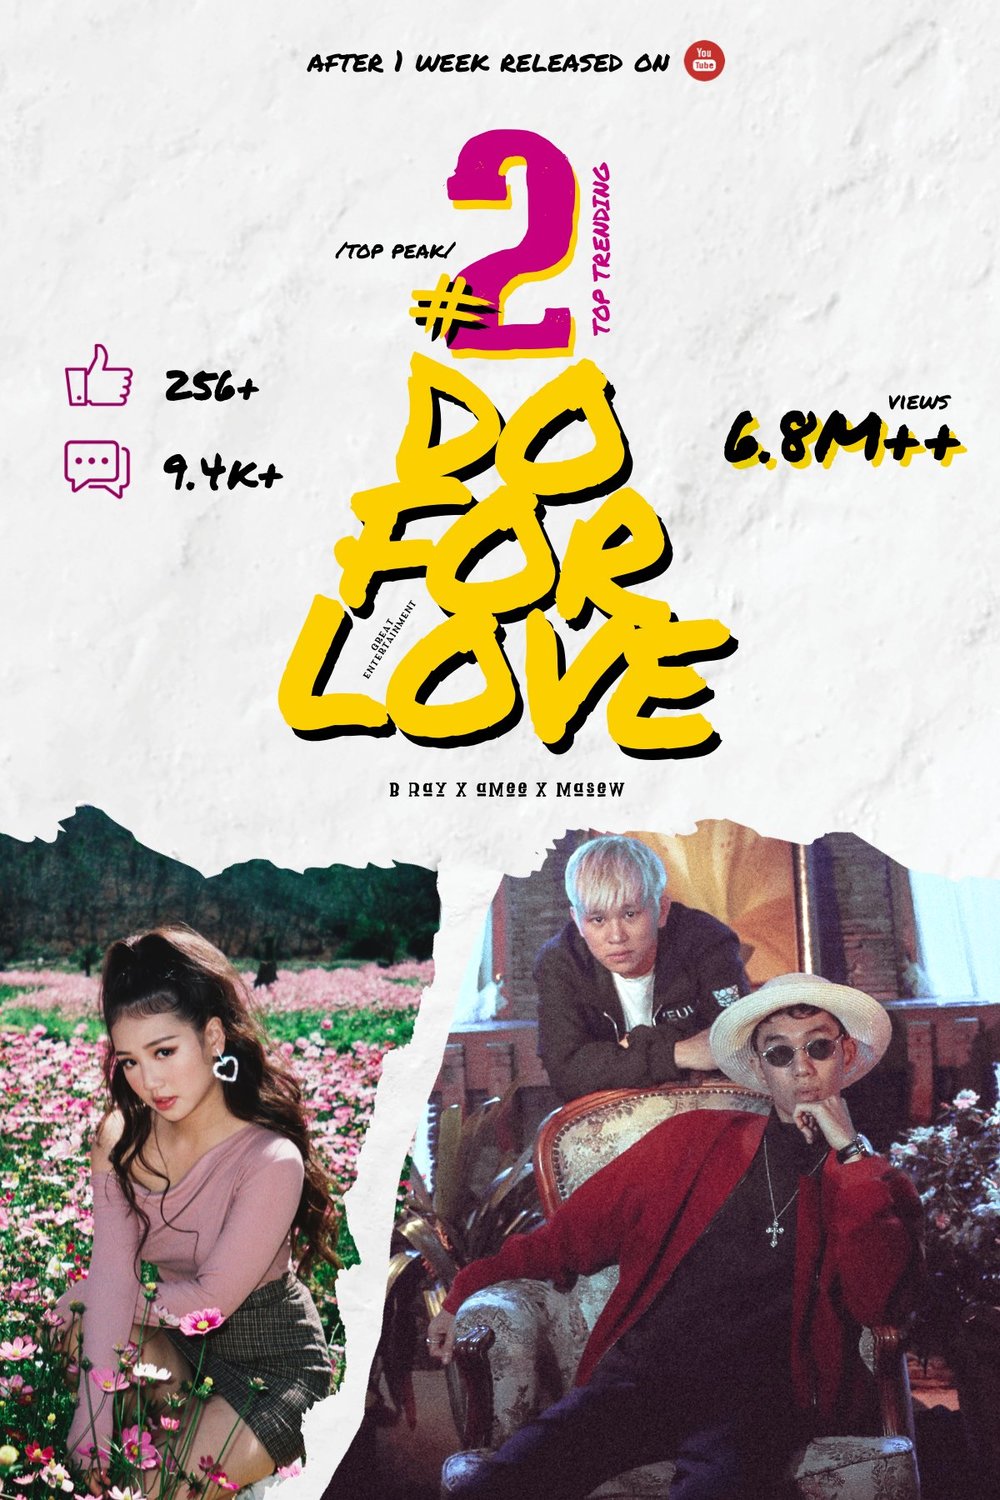  
Thành tích MV Do For Love đạt được sau 1 tuần ra mắt